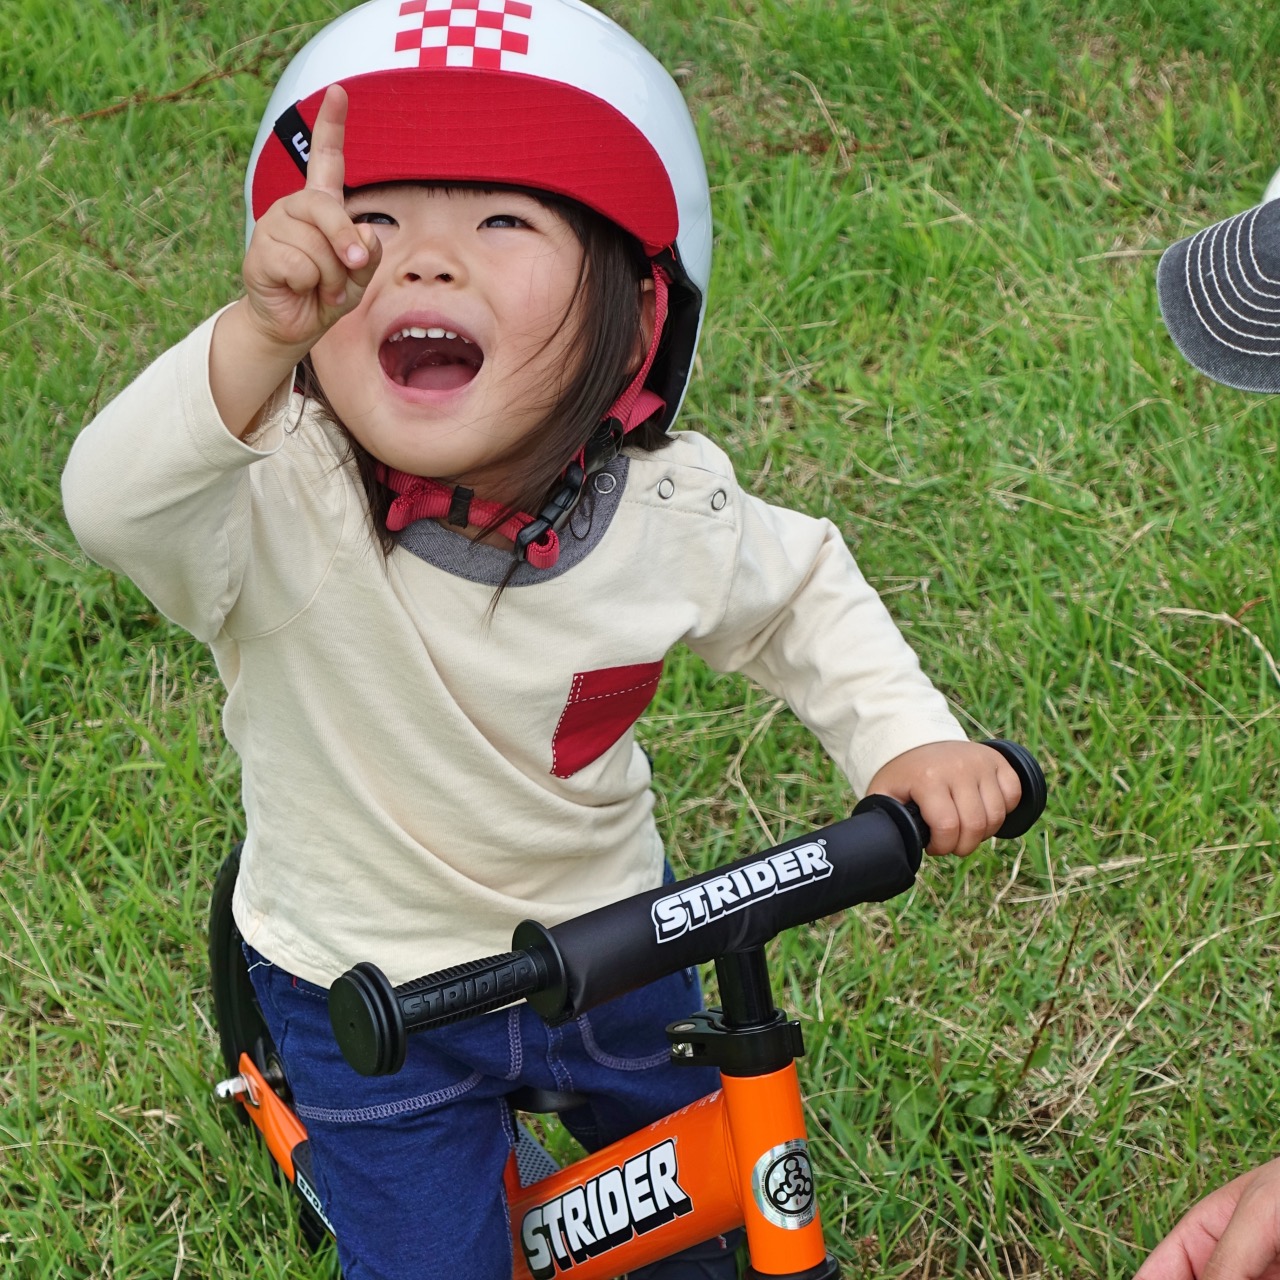 bernのヘルメットをかぶりストライダースポーツモデルに乗る女の子